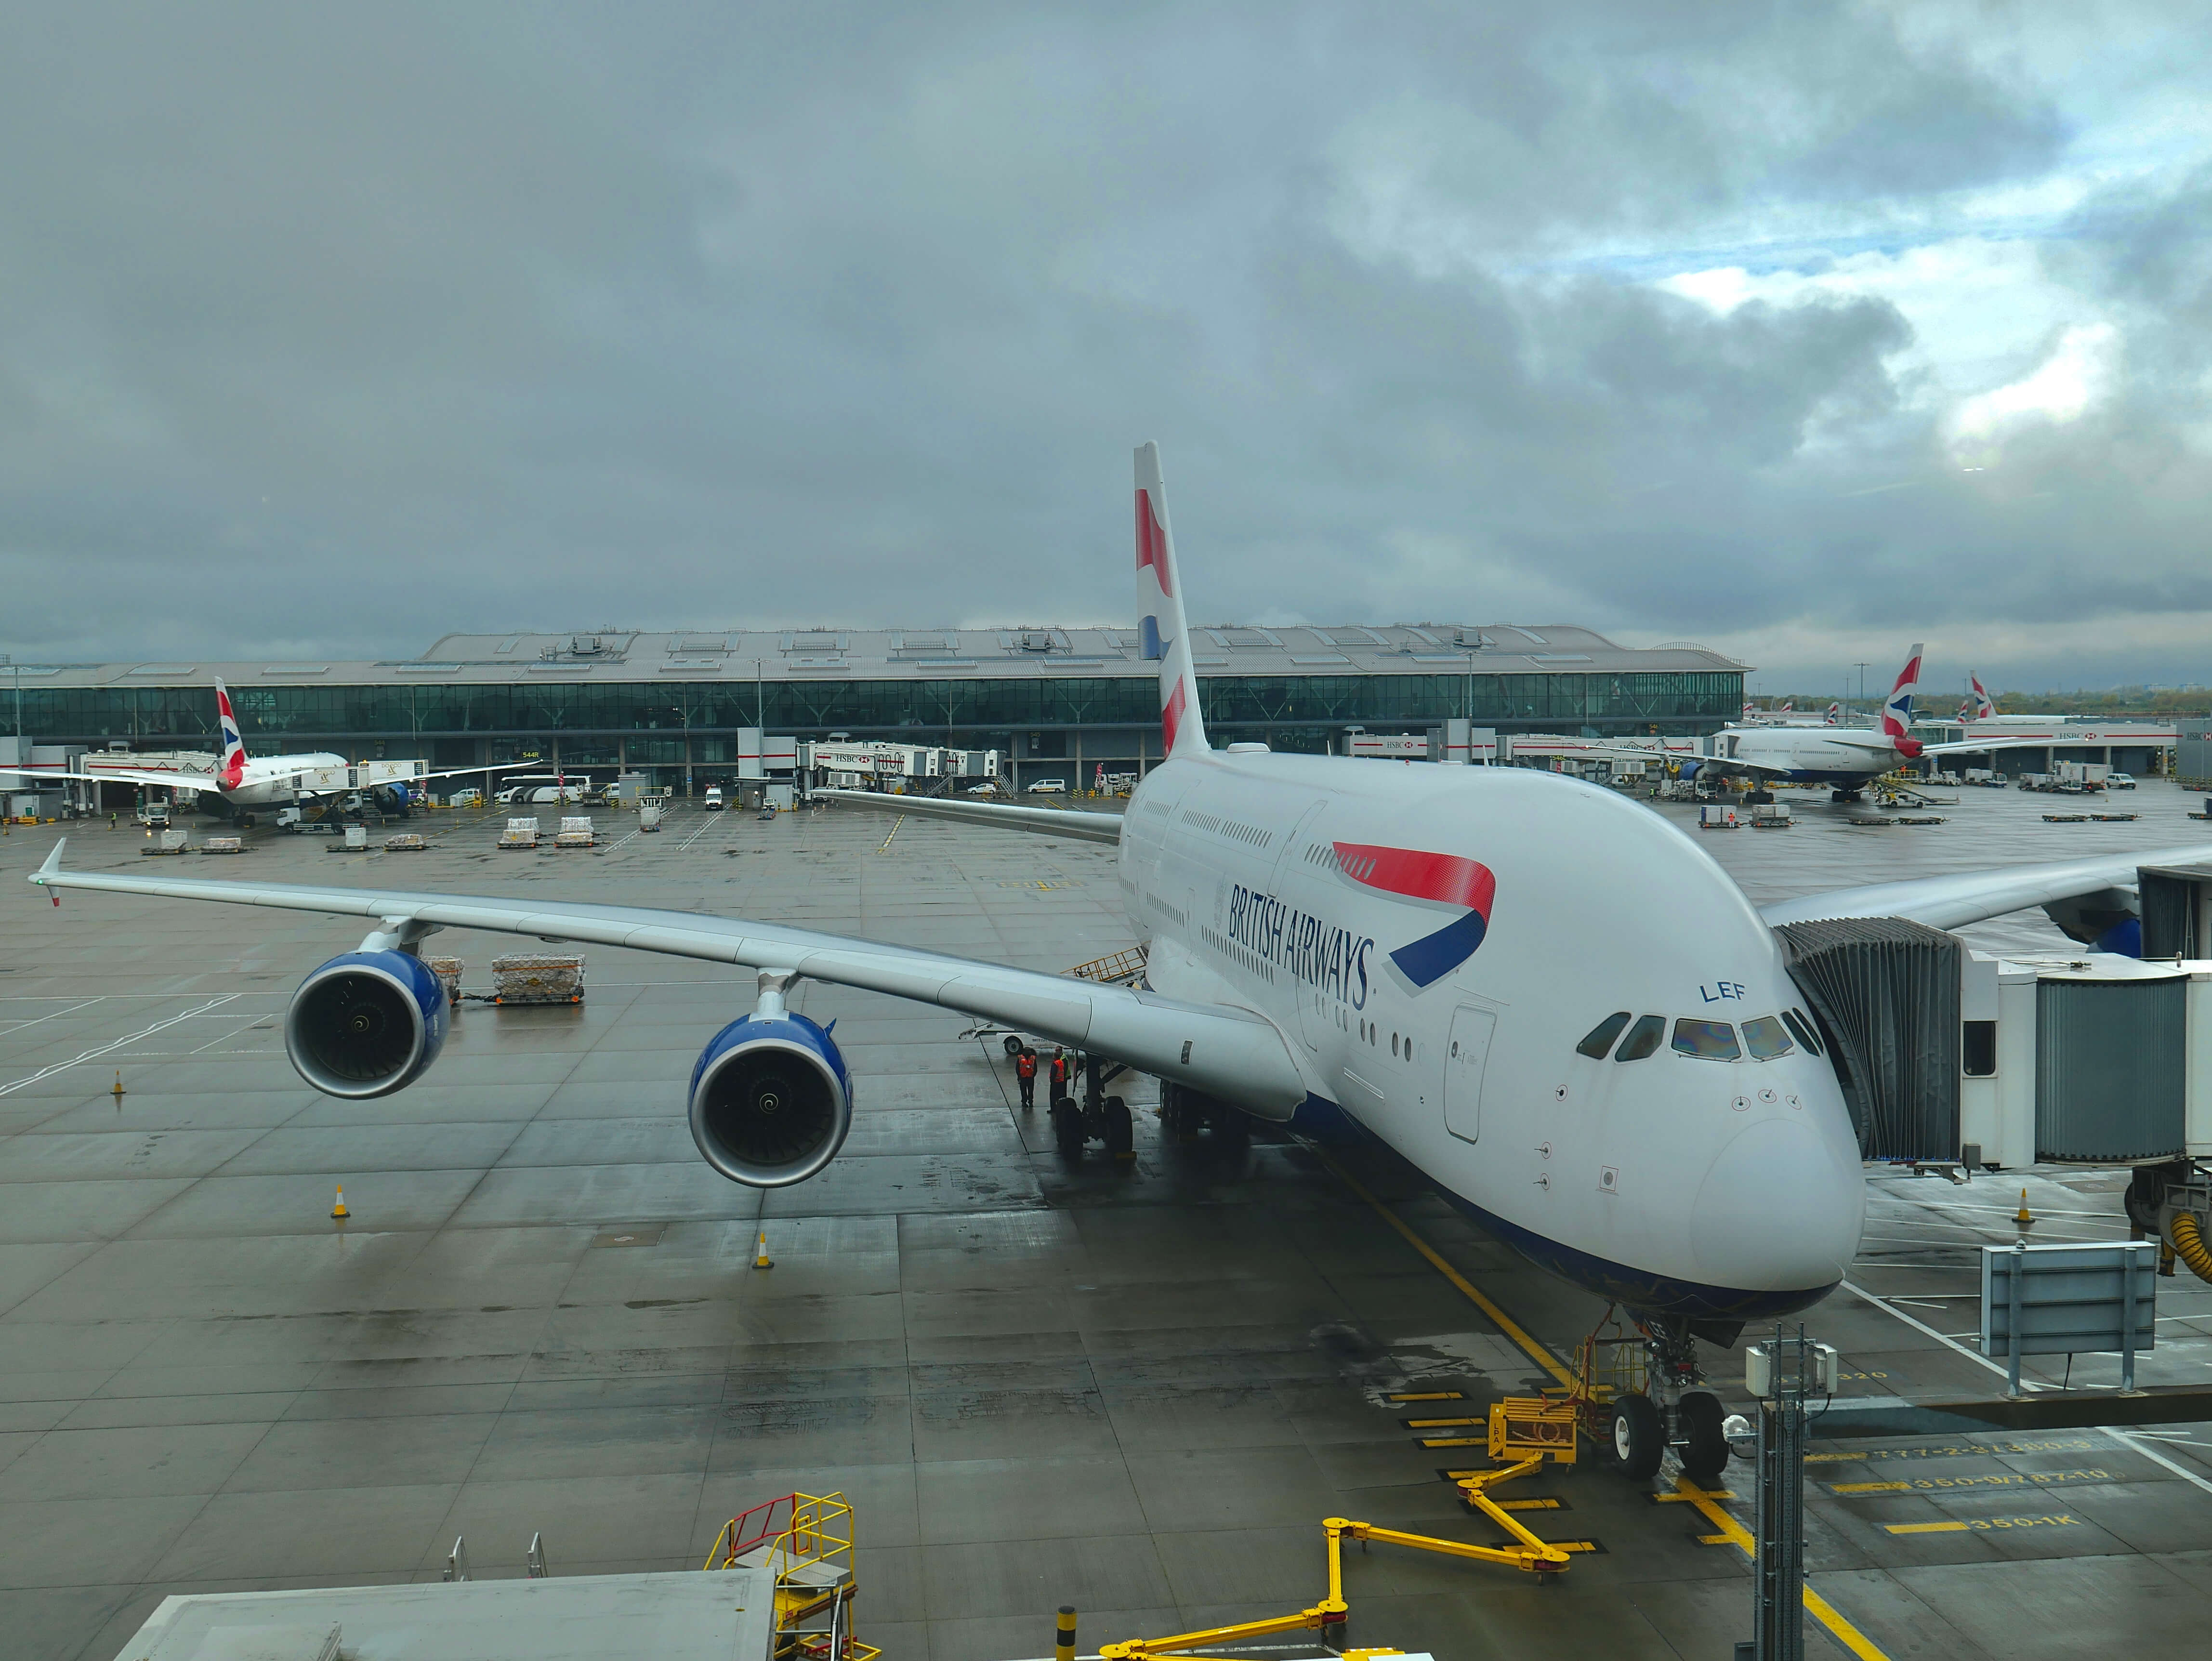 British Airways A380 on the ground